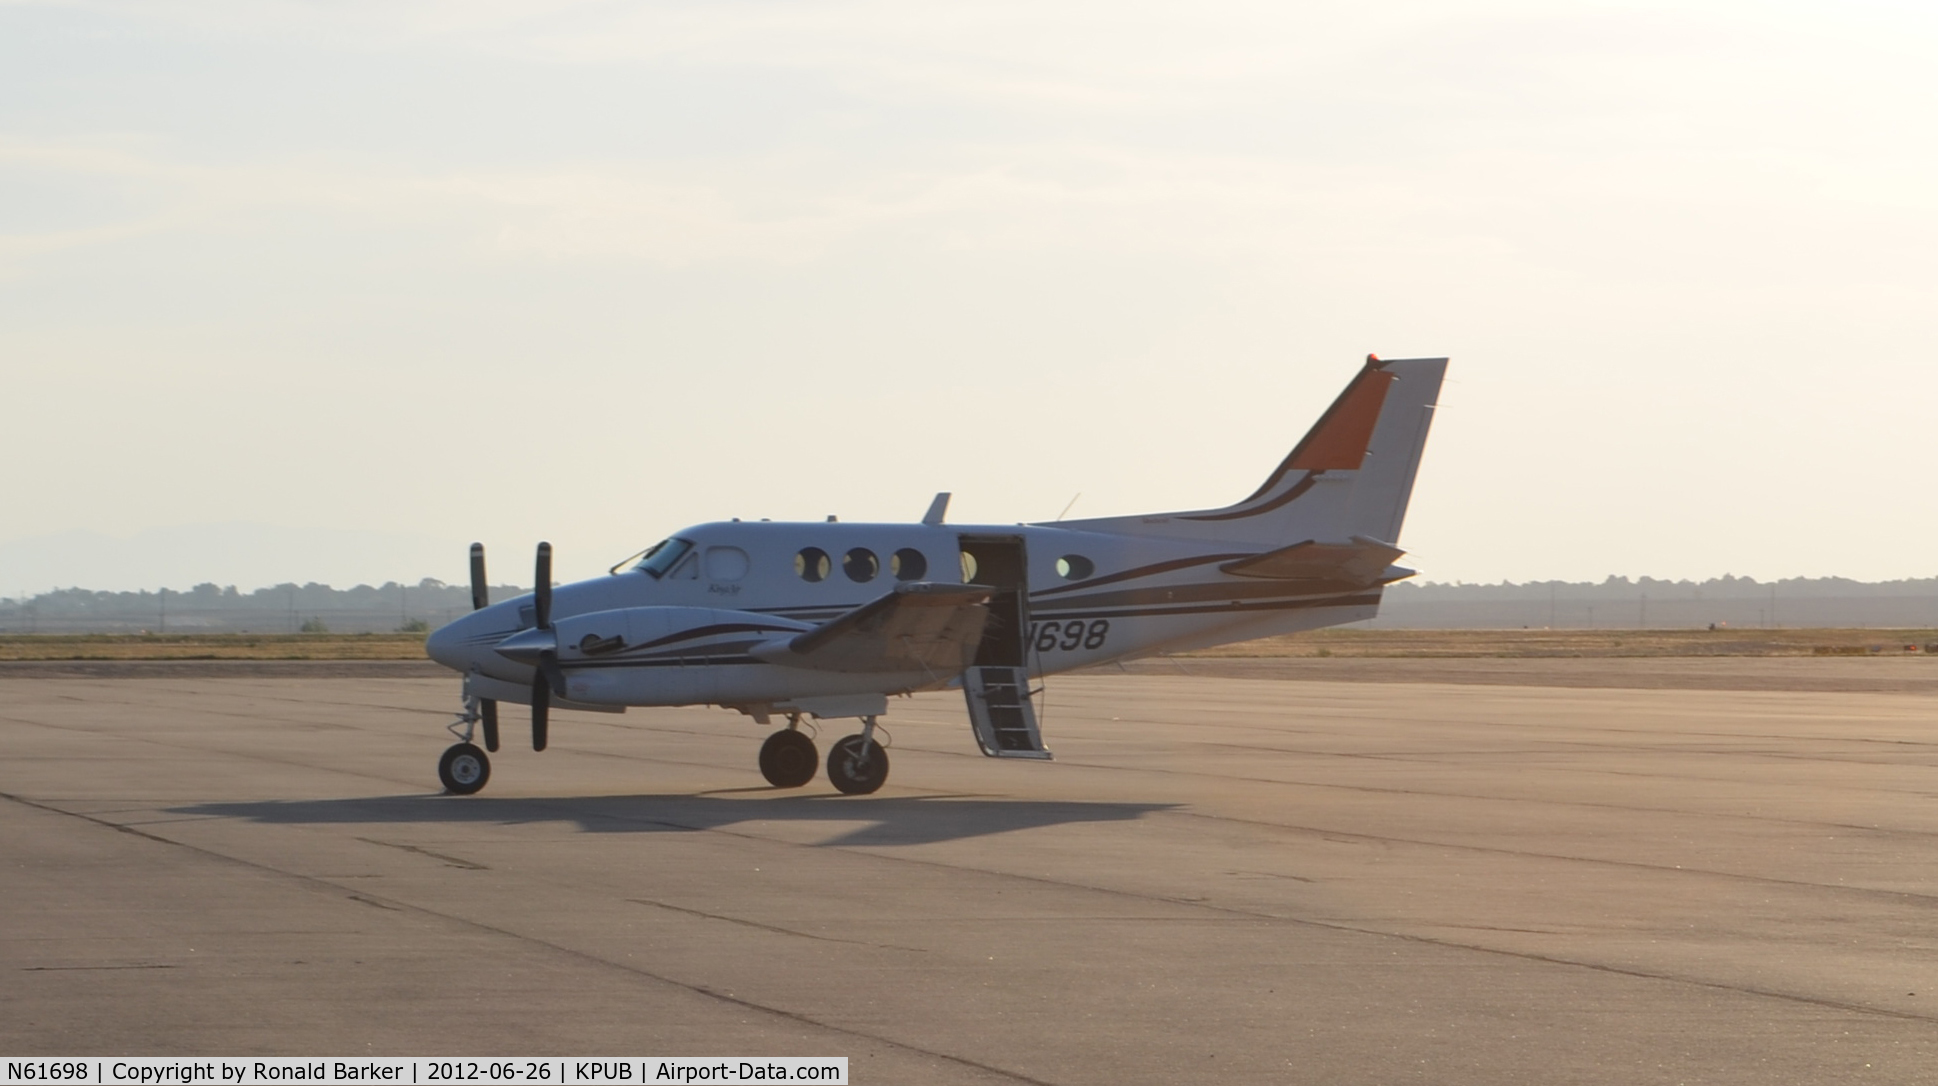 N61698, Raytheon Aircraft Company C90A C/N LJ-1698, Pueblo